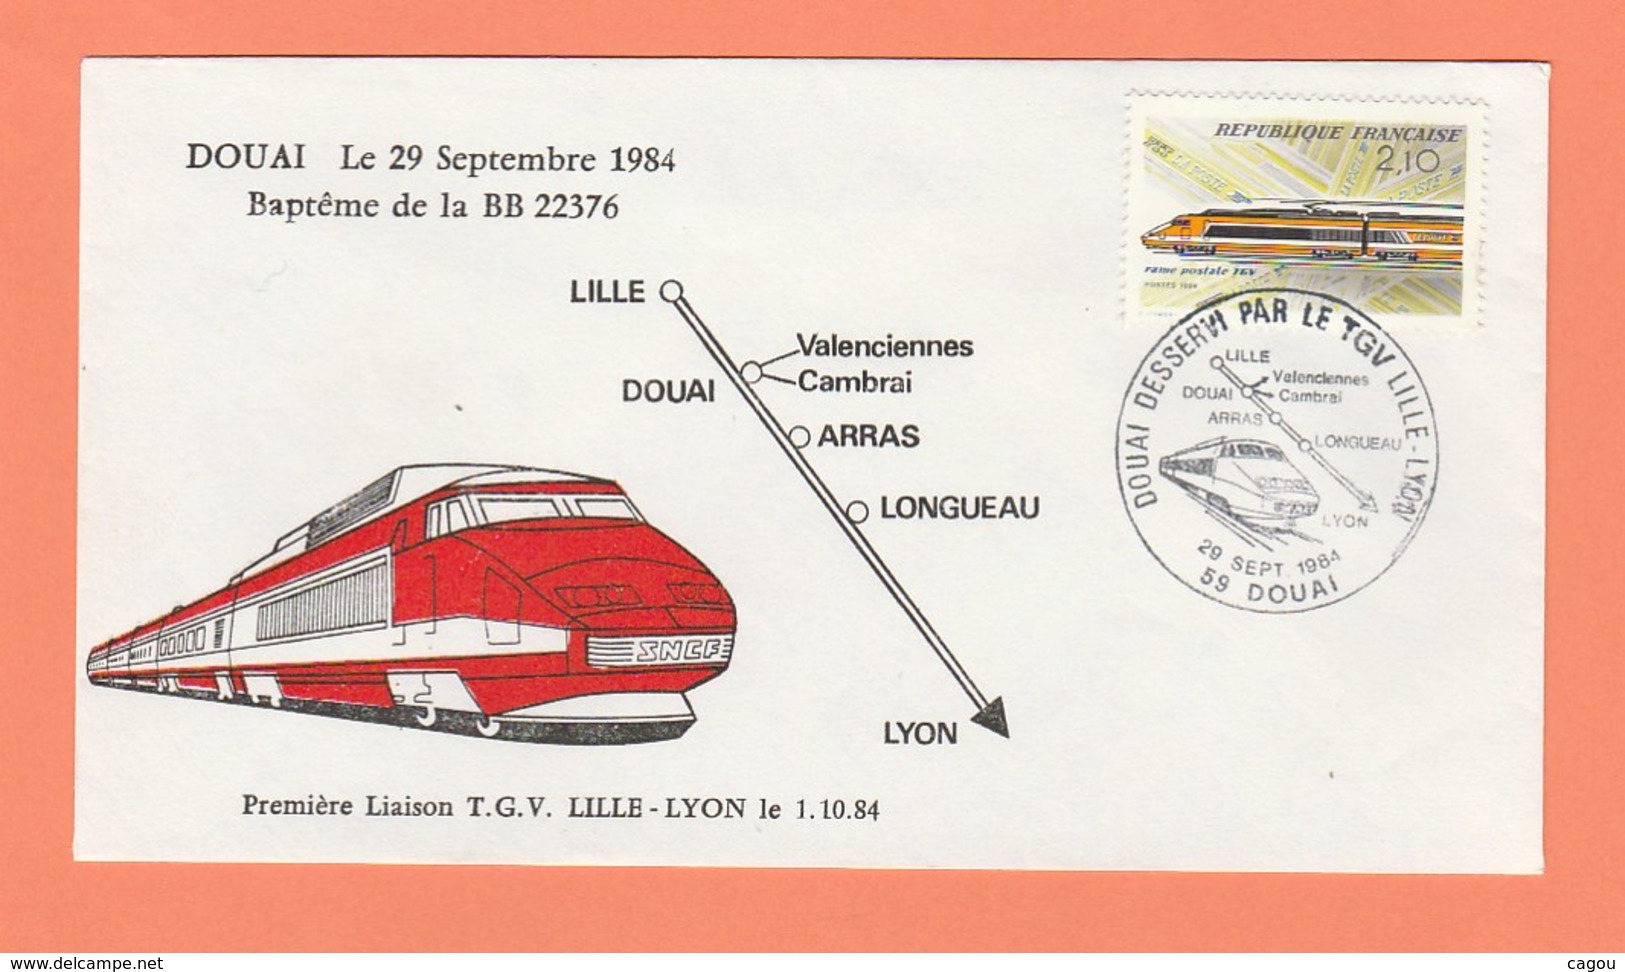 CACHET DOUAI DESSERVI PAR LE TGV LILLE-LYON - 59 DOUAI 29 SEPTEMBRE 1984 SUR ENVELOPPE - Cachets Provisoires